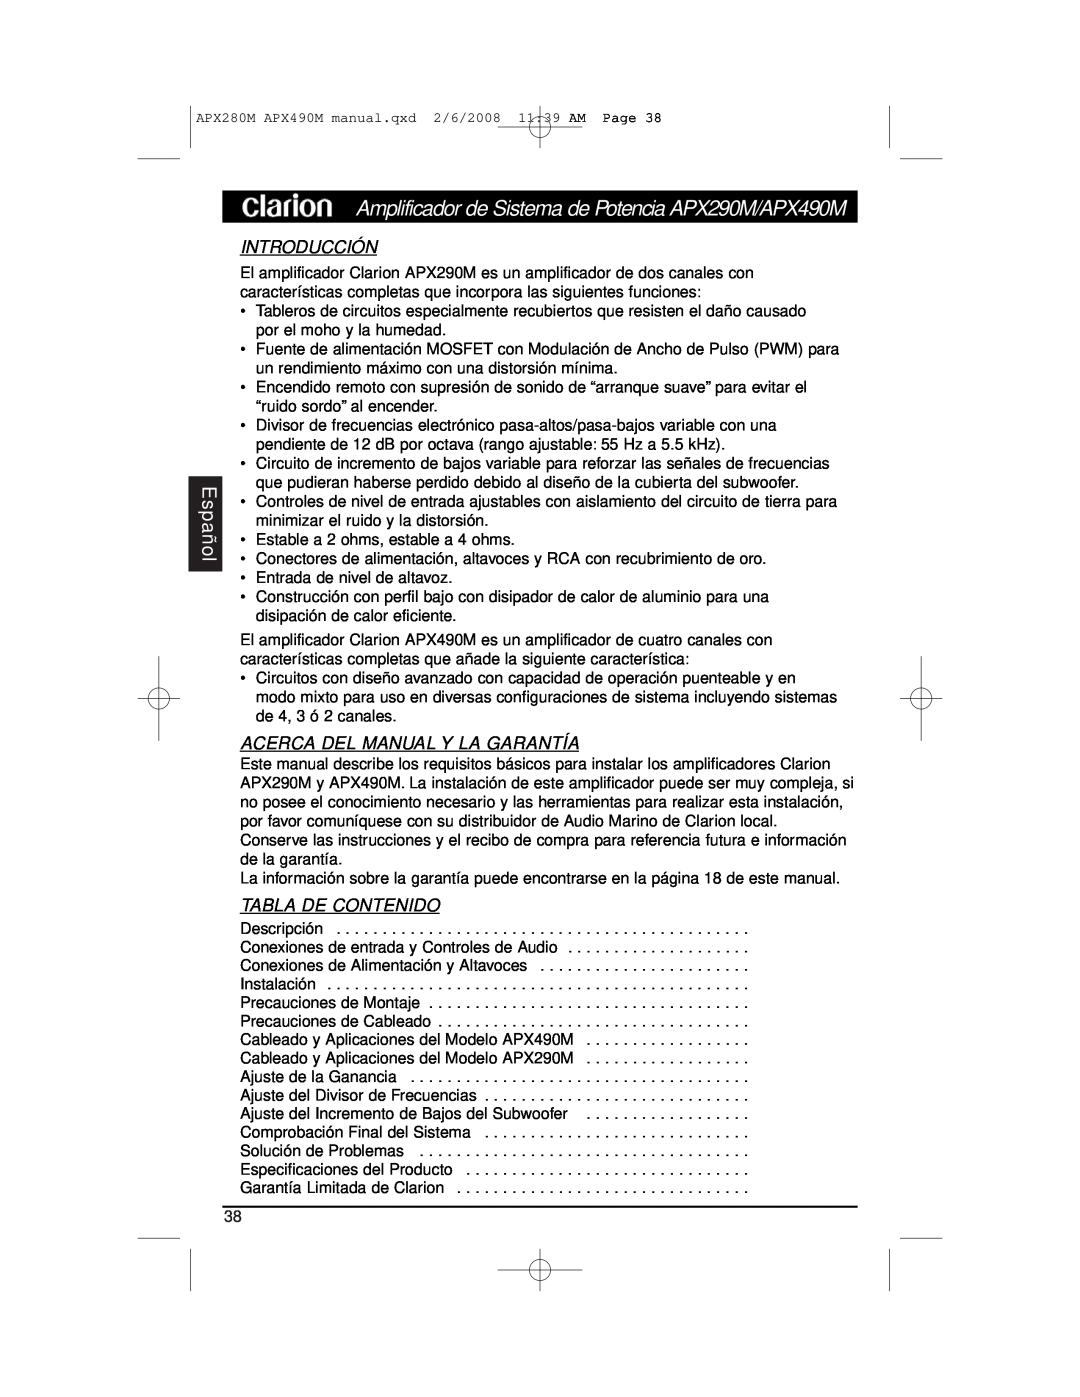 Clarion APX290M installation manual Español, Introducción, Acerca Del Manual Y La Garantía, Tabla De Contenido 